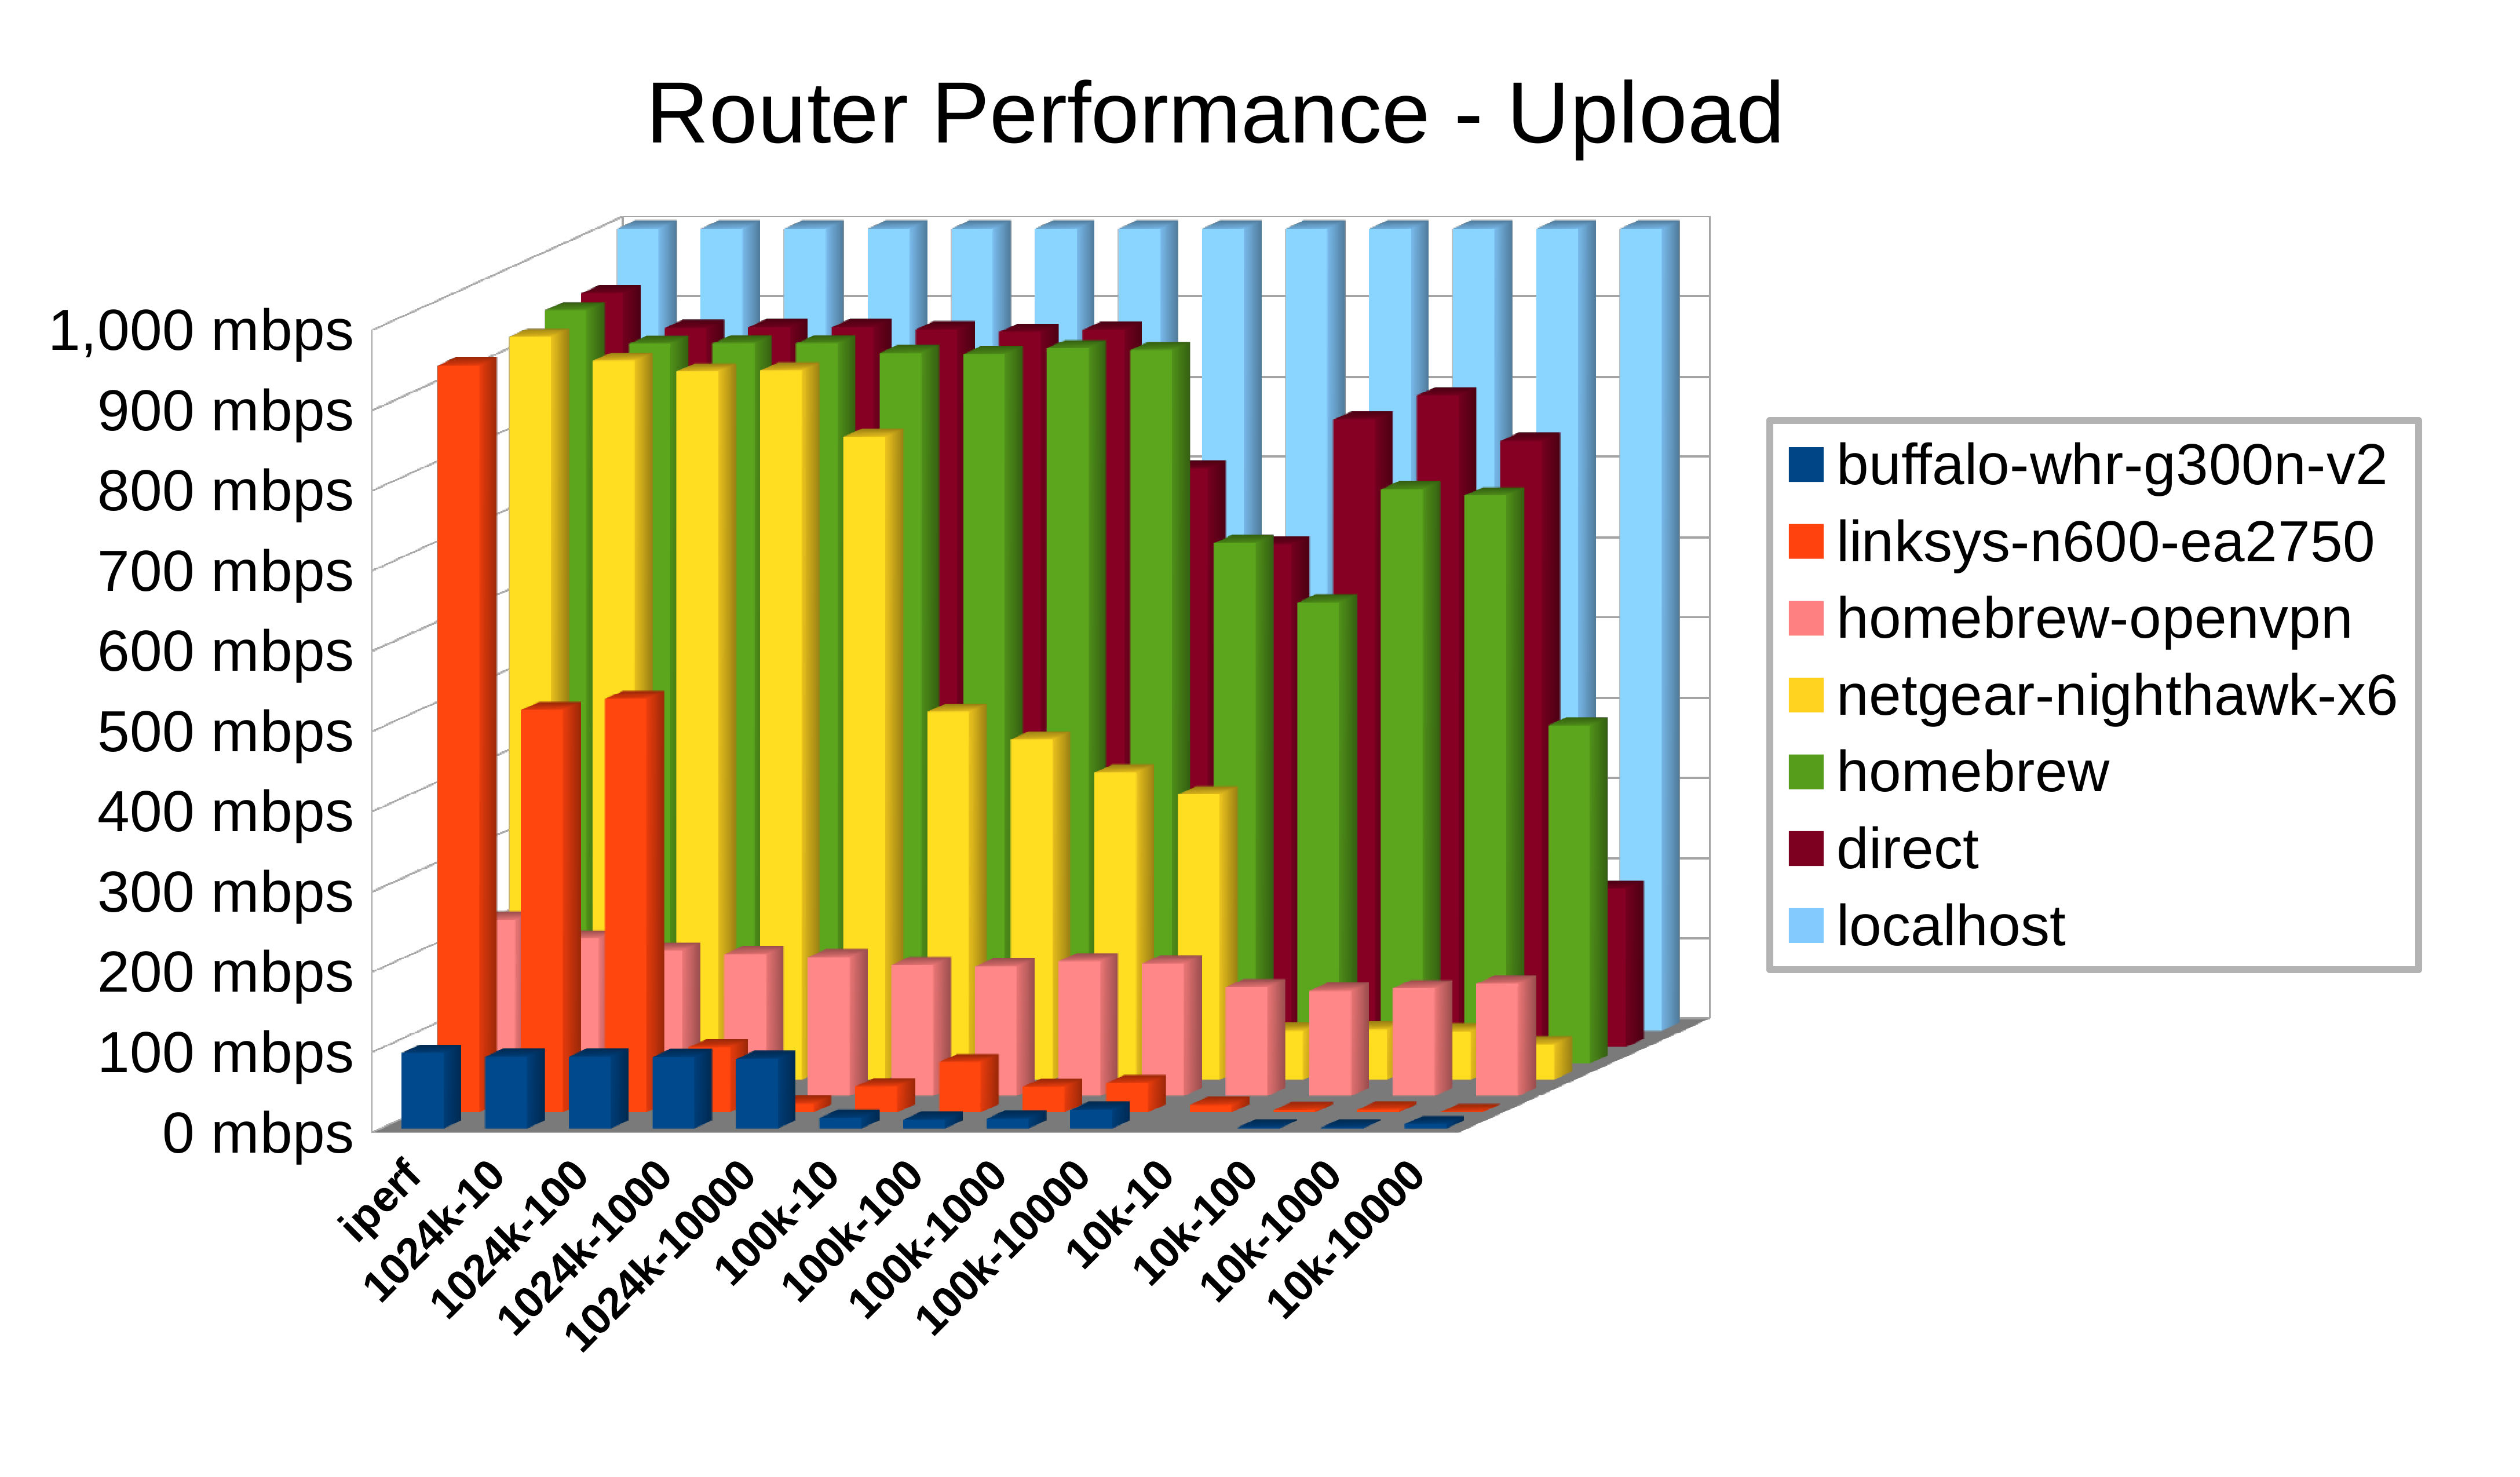 Netgear Router Comparison Chart